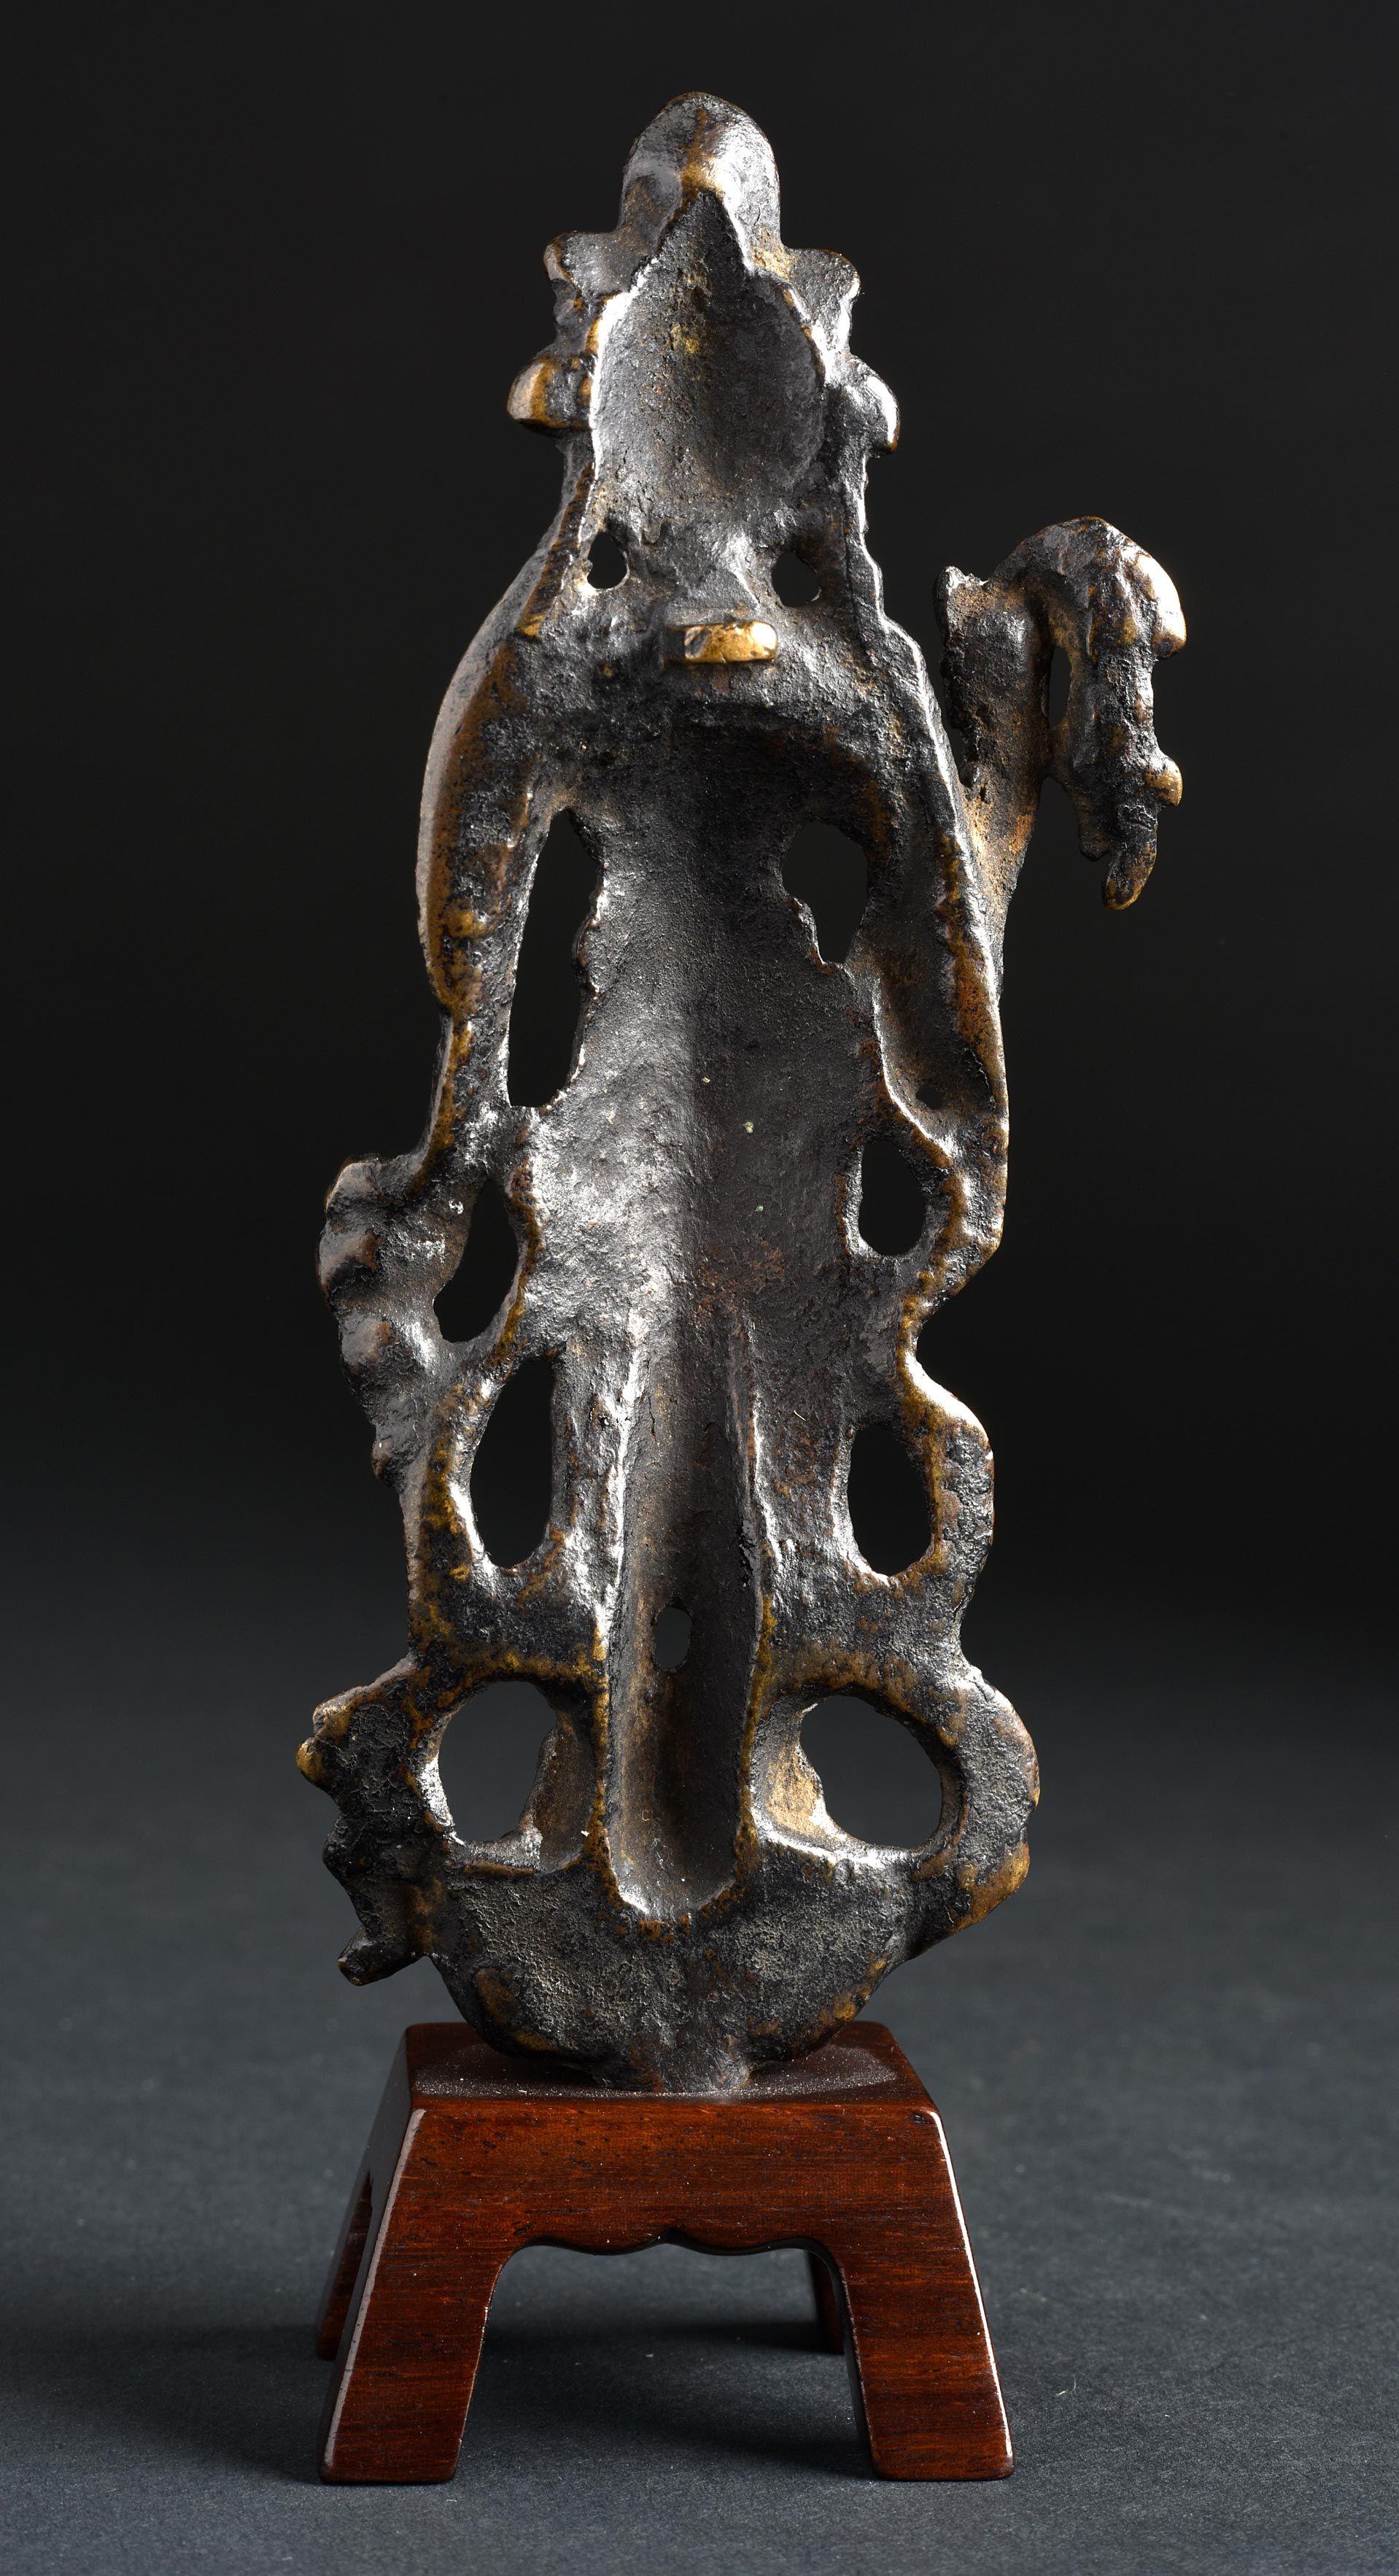 6-9. Jh. Chinesischer Bronze-Bodhisattva des Mitgefühls aus der Tang-Dynastie. Dieses Stück hat ein tolles Gesicht und echte Finesse in der Bildhauerei. Der Guss ist eine Qualität, die nur bei hochwertigen Exemplaren zu finden ist. Man beachte zum